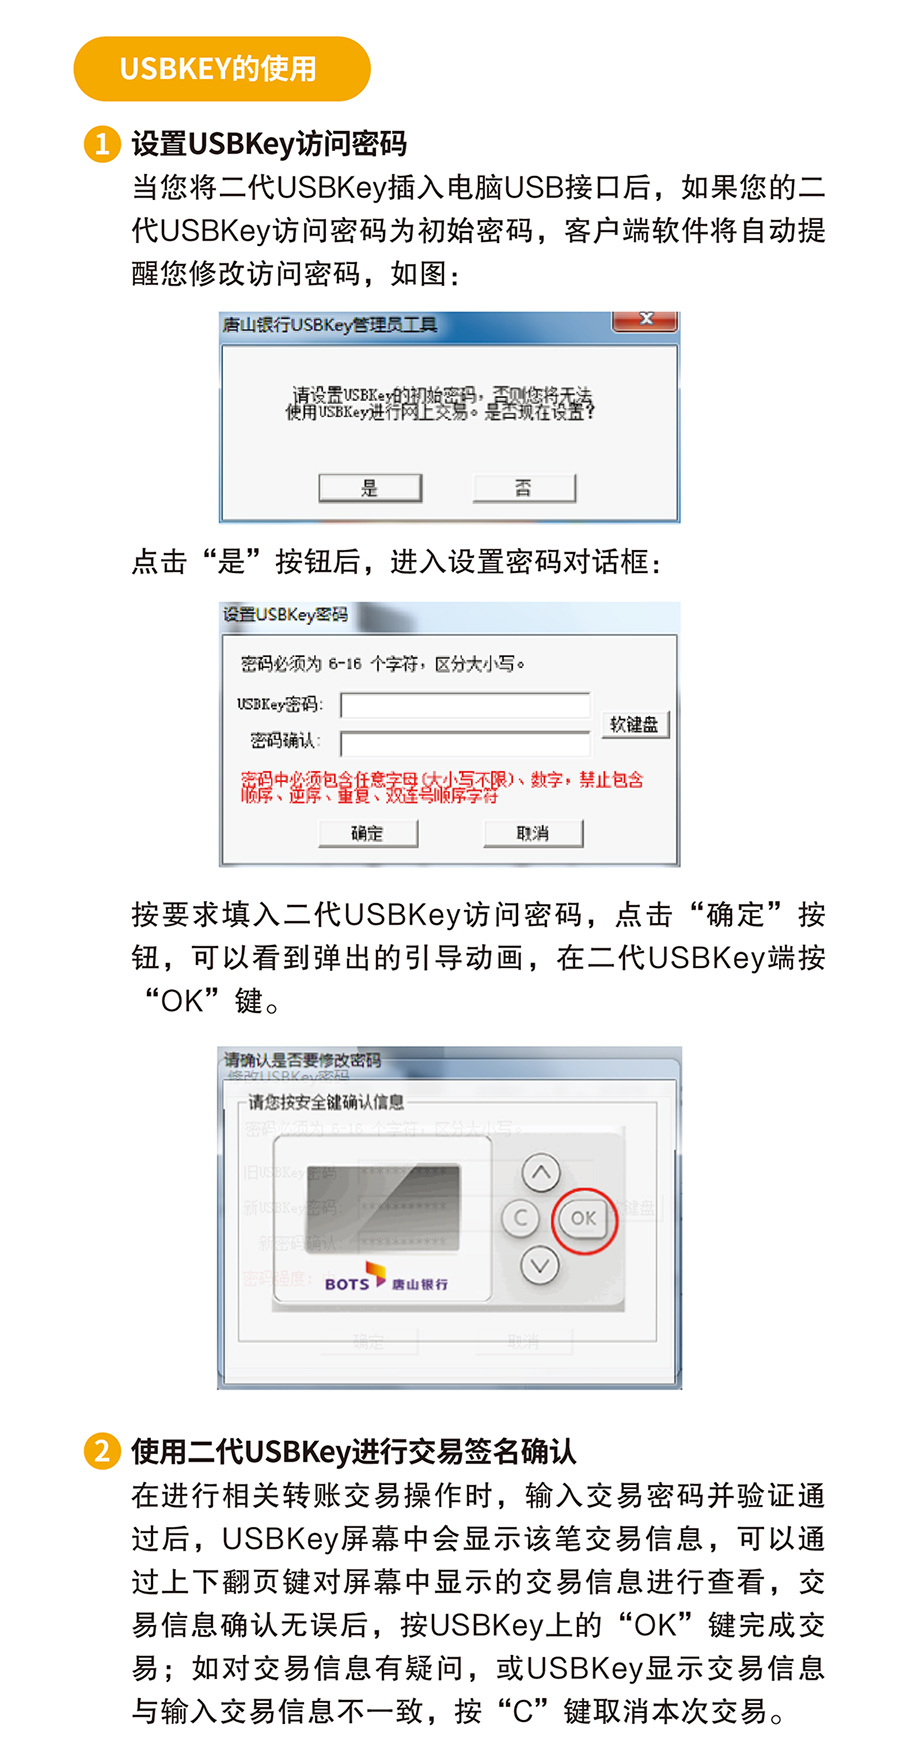 唐山銀行二代USBKEY使用說明